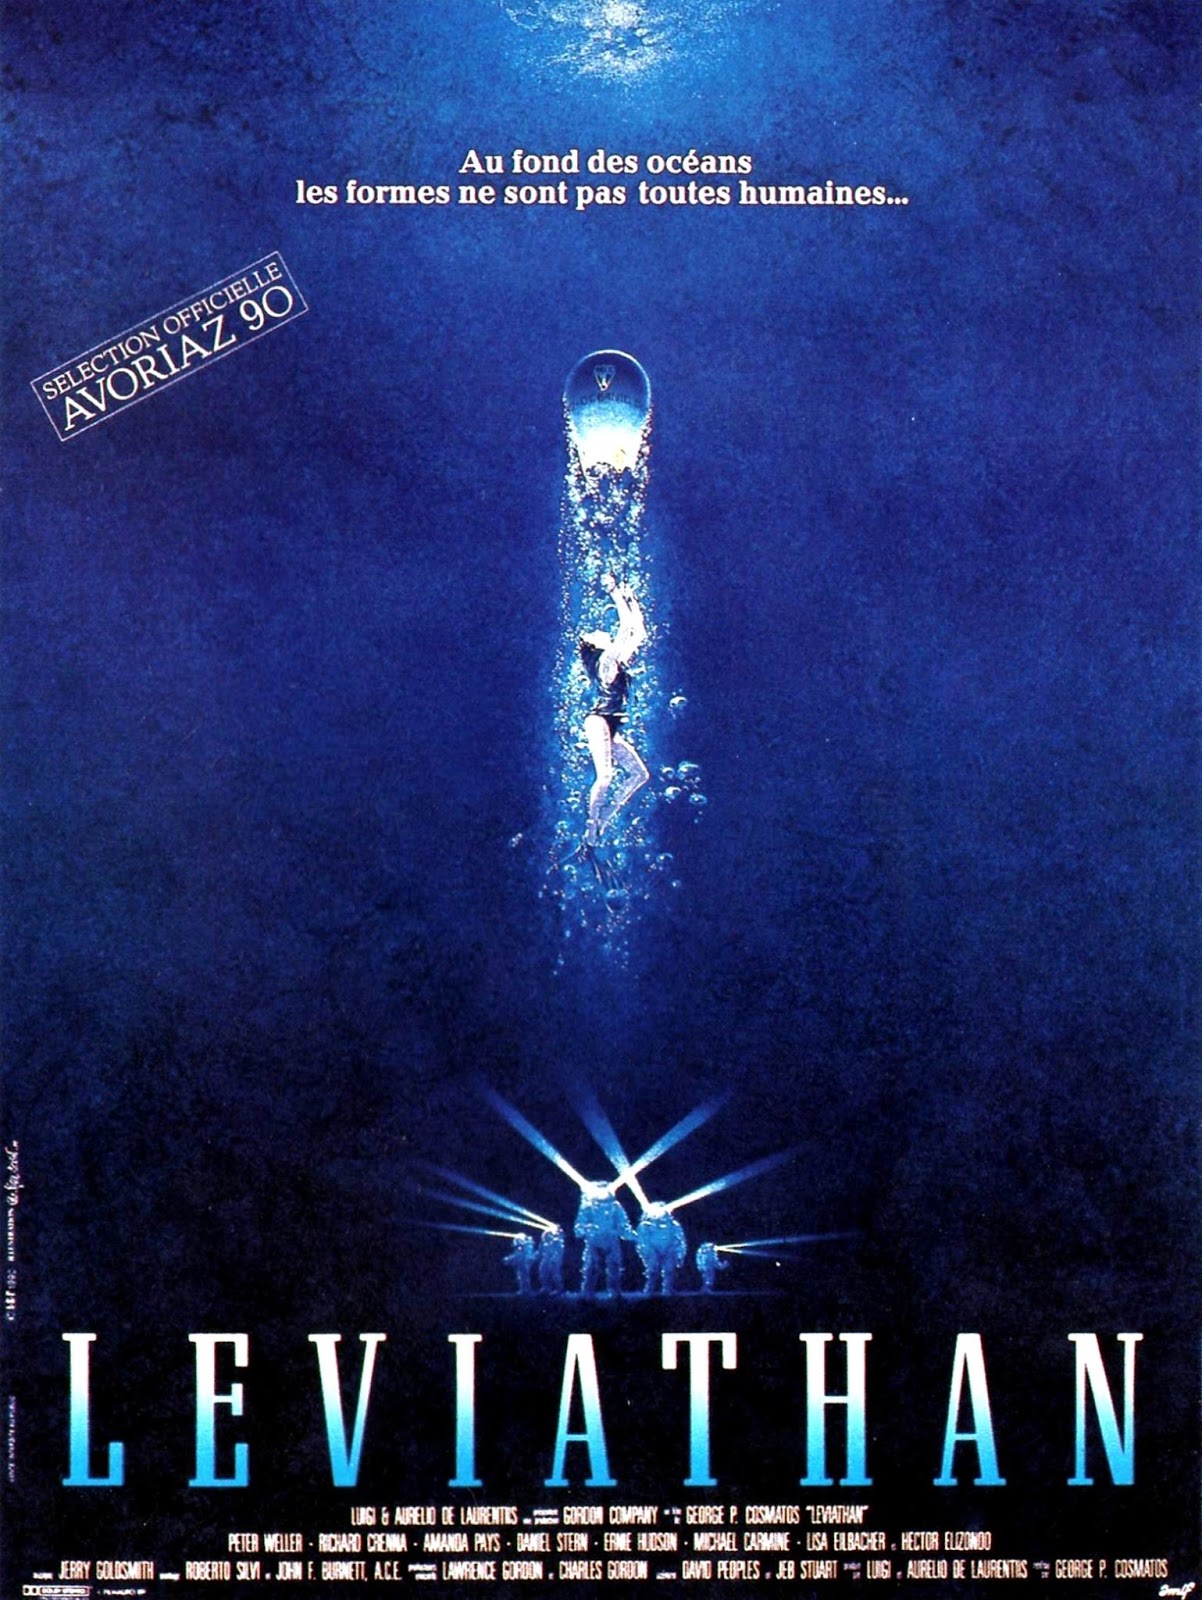 Leviathan (1989) Screenshot 1 